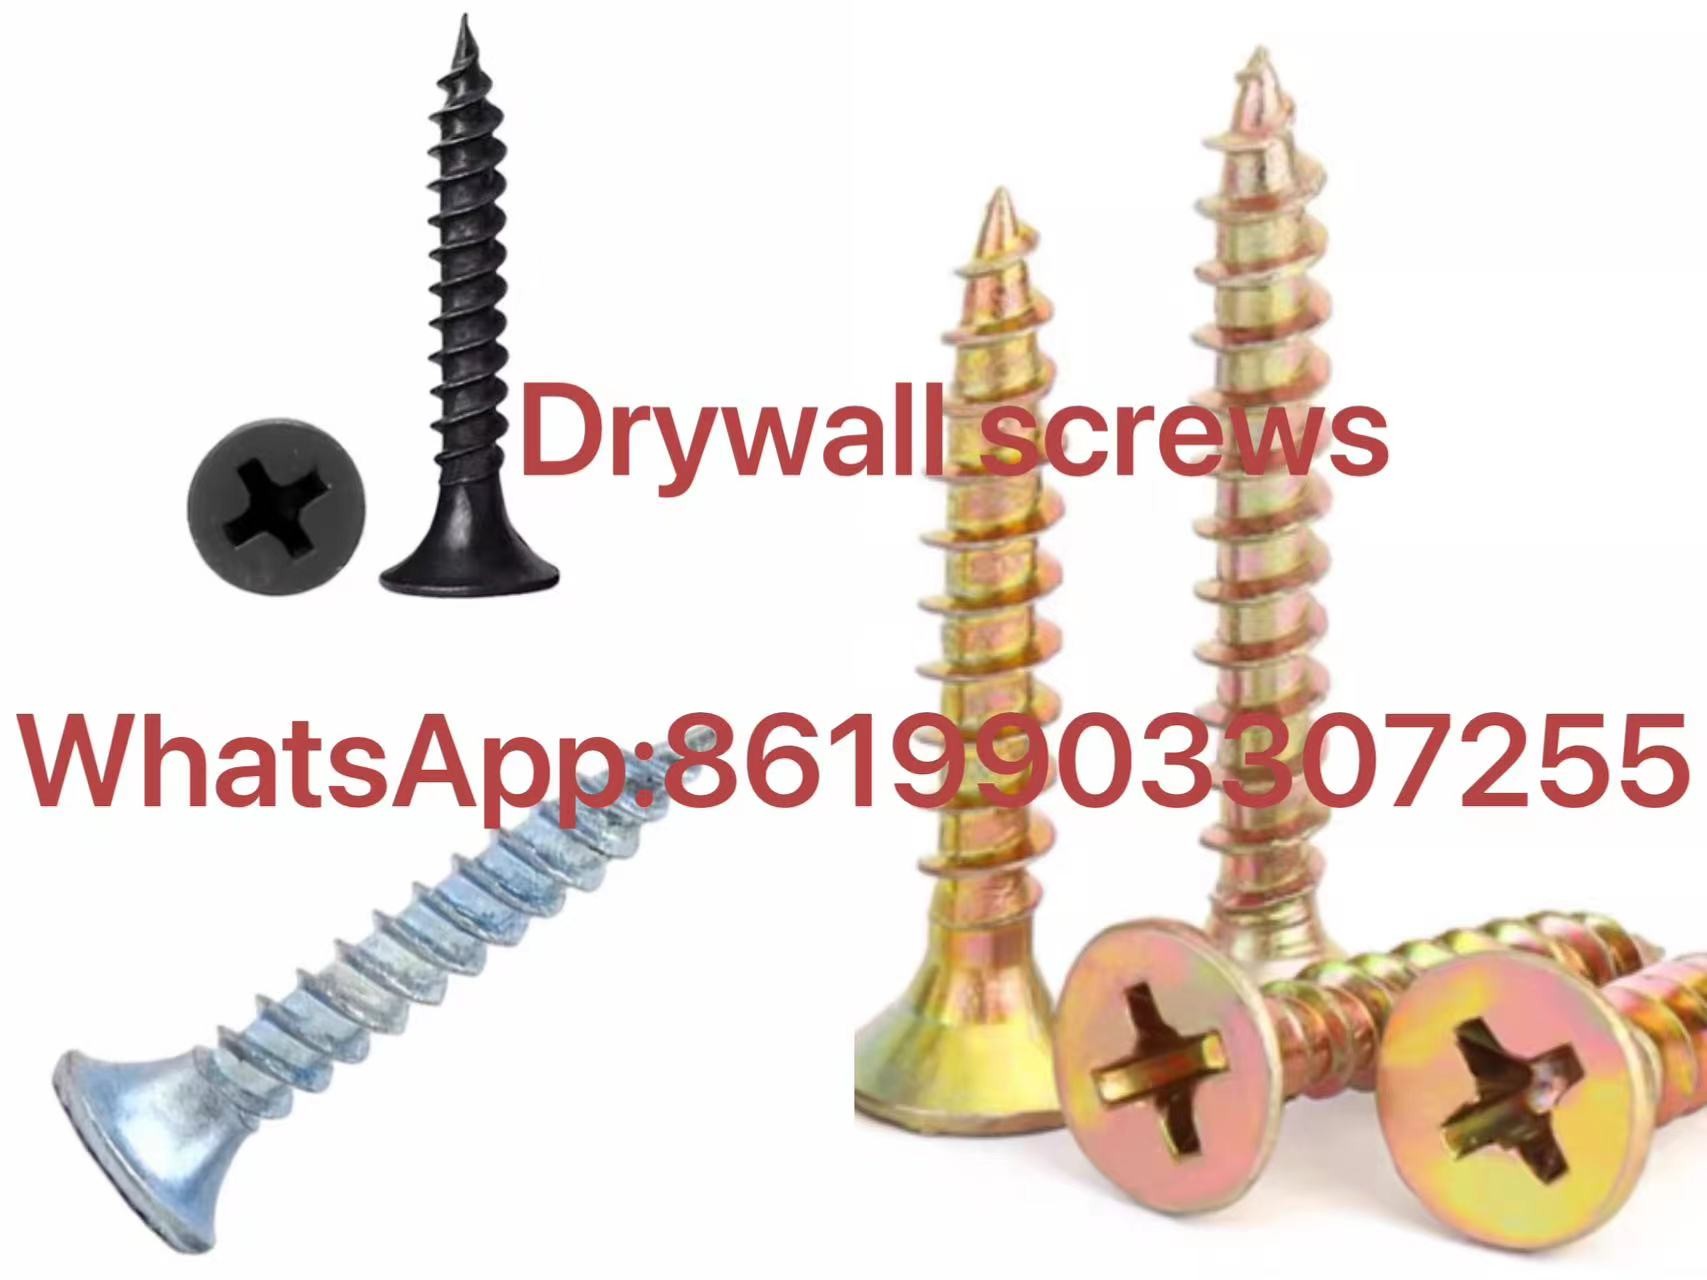 factory sales drywall screws WhatsApp:8619903307255